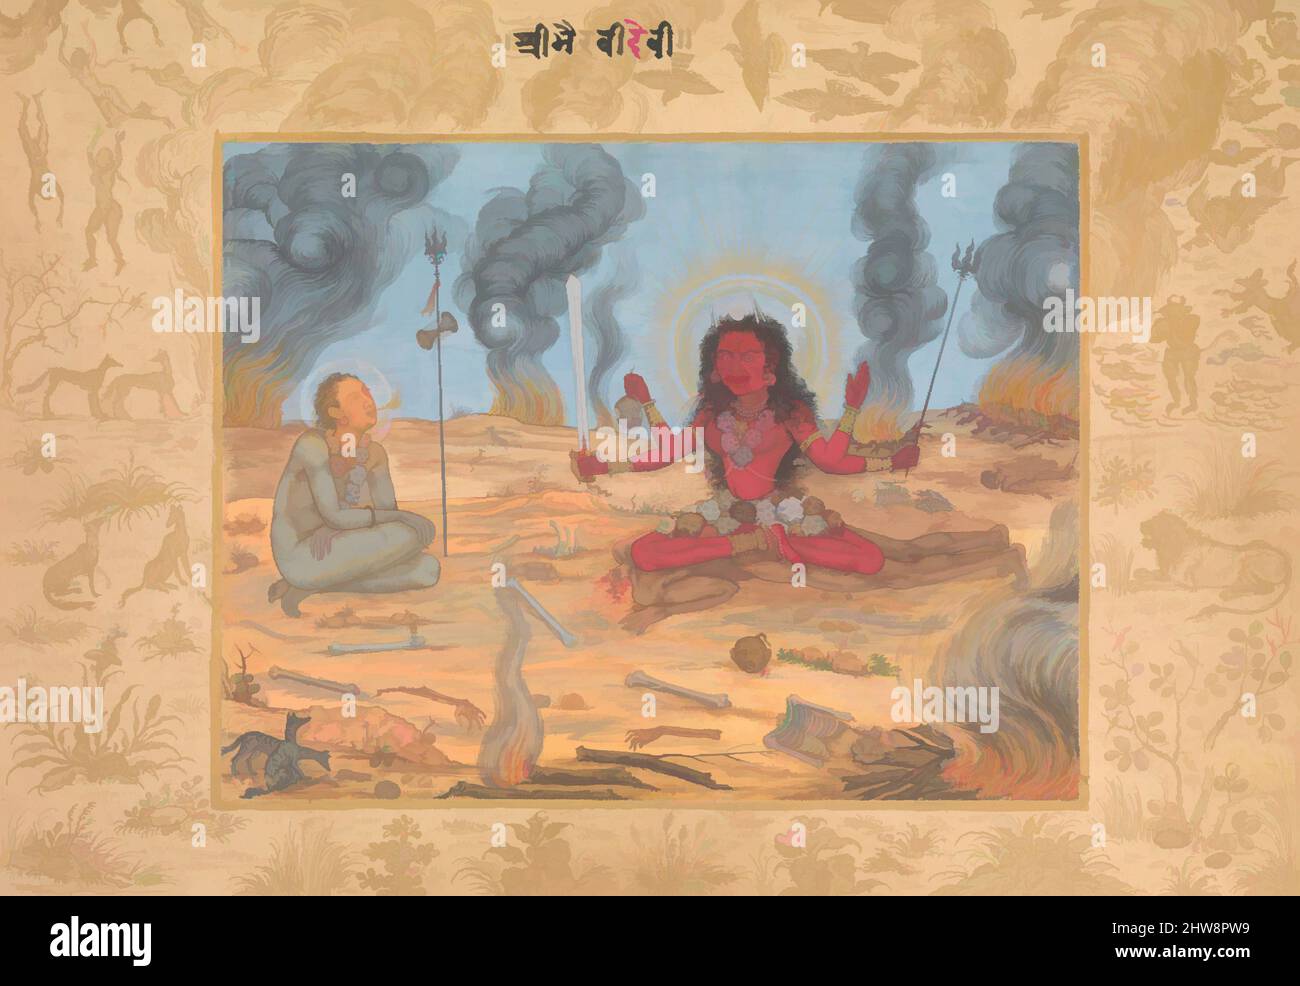 Kunst inspiriert von der Göttin Bhairavi Devi mit Shiva, ca. 1630–35, Herkunftsland Indien, Deckfarbenes Aquarell und Gold auf Papier, H. 7 1/4 Zoll (18,5 cm), Codices, zugeschrieben Payag (indisch, aktiv ca. 1591–1658), in diesem Gemälde, das dem mughischen Künstler Payag, einer dämonischen Form, zugeschrieben wird, modernisierte Classic Works von Artotop mit einem Schuss Moderne. Formen, Farbe und Wert, auffällige visuelle Wirkung auf Kunst. Emotionen durch Freiheit von Kunstwerken auf zeitgemäße Weise. Eine zeitlose Botschaft, die eine wild kreative neue Richtung verfolgt. Künstler, die sich dem digitalen Medium zuwenden und die Artotop NFT erschaffen Stockfoto